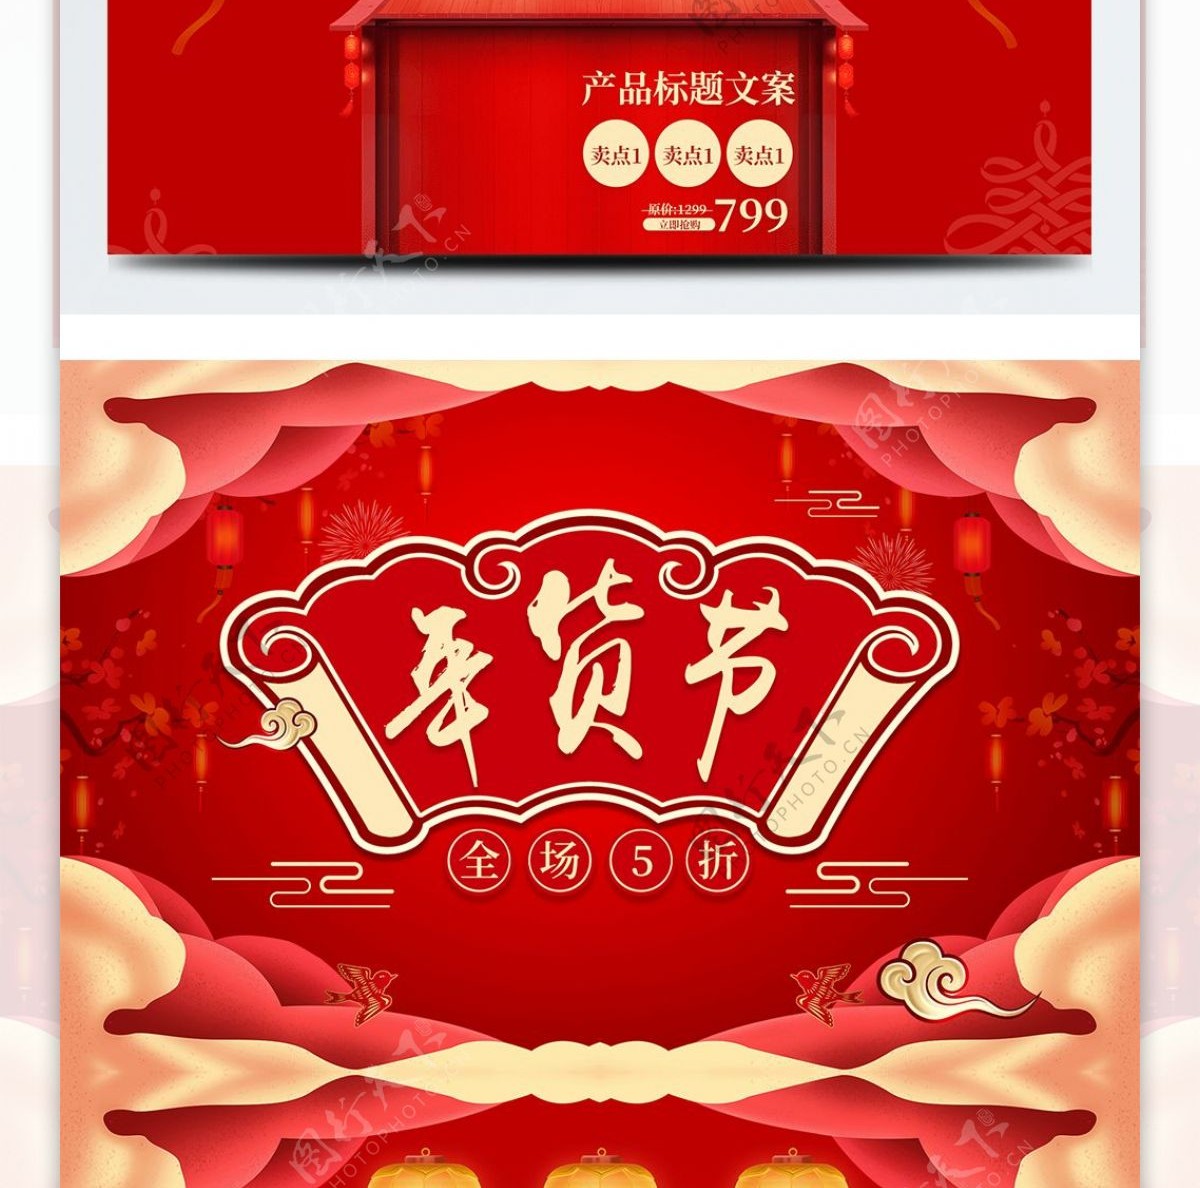 红色中国风祥云年货节促销首页电商装修模板